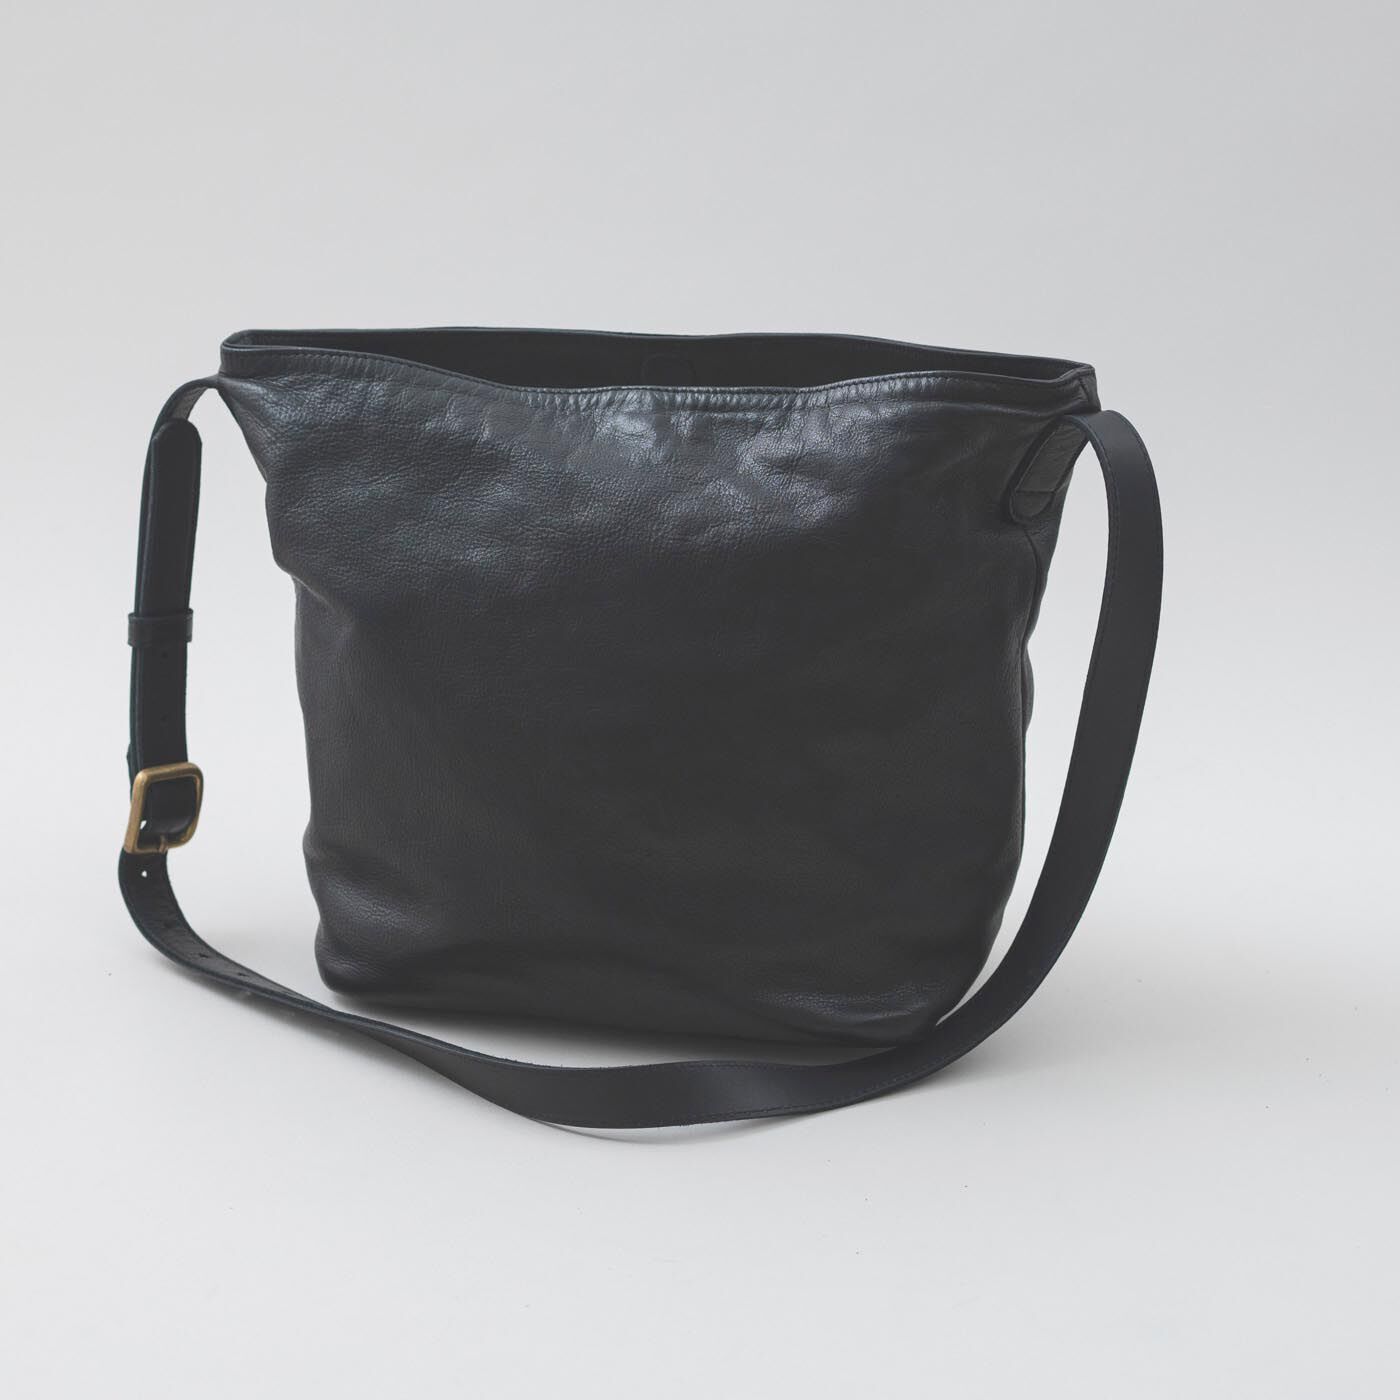 ＆Stories|福岡の鞄作家と作った 職人本革のエトランドルバッグ〈ブラック〉|革の質感を生かすため、デザインはとことんミニマム。